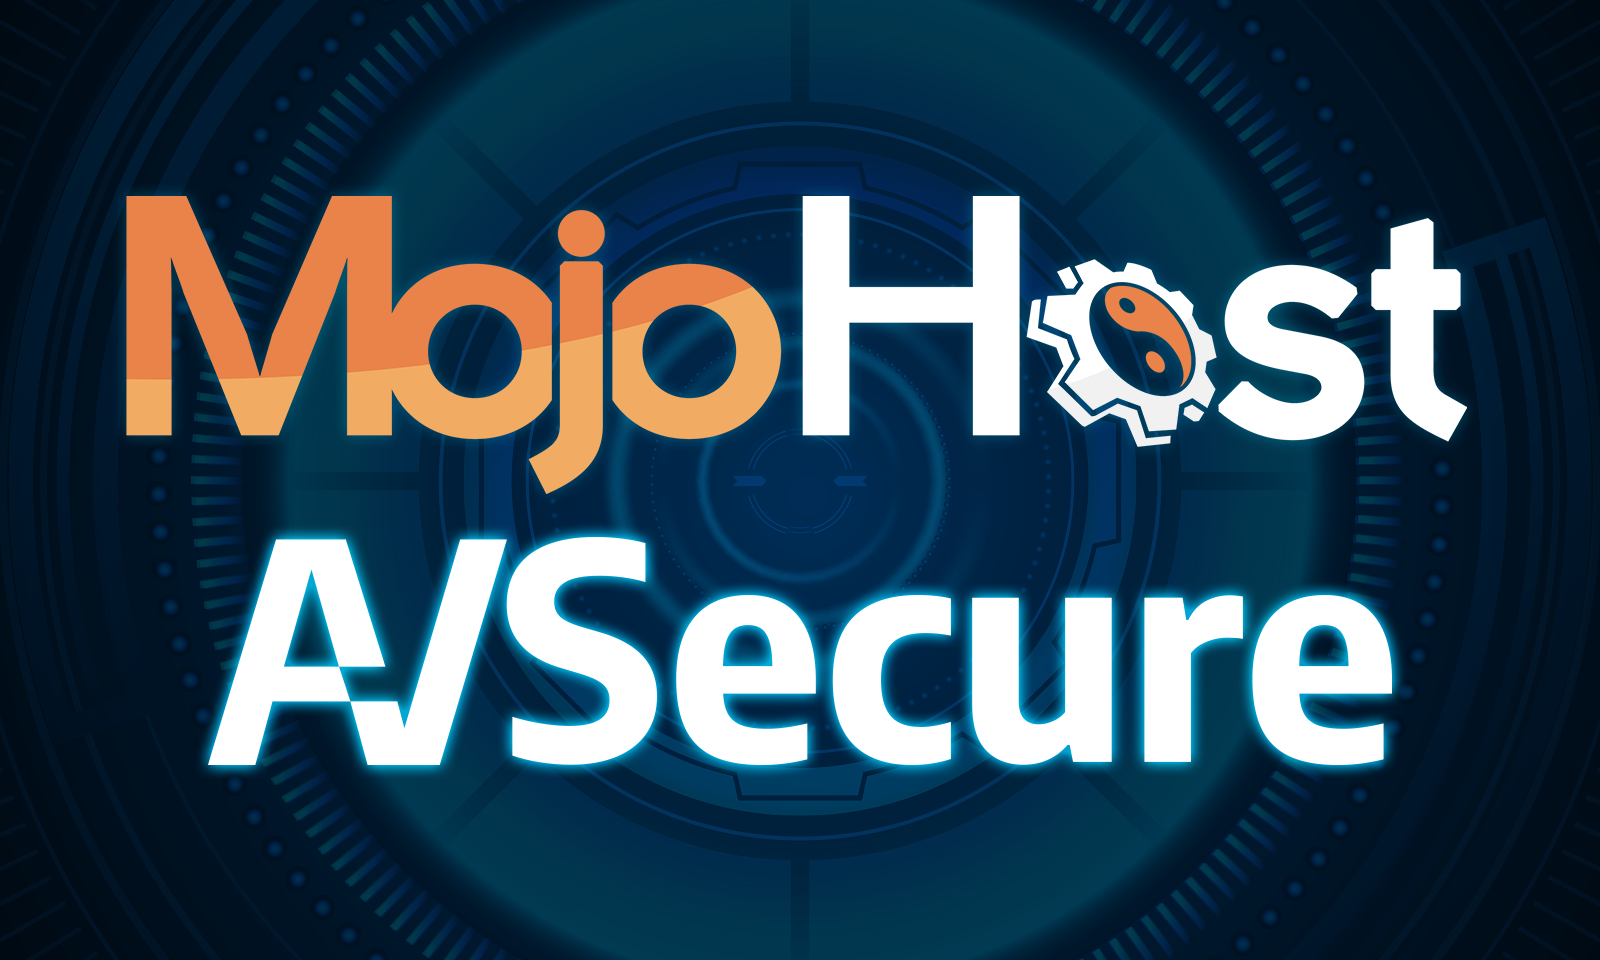 MojoHost Backs AVSecure Blockchain Age Verification